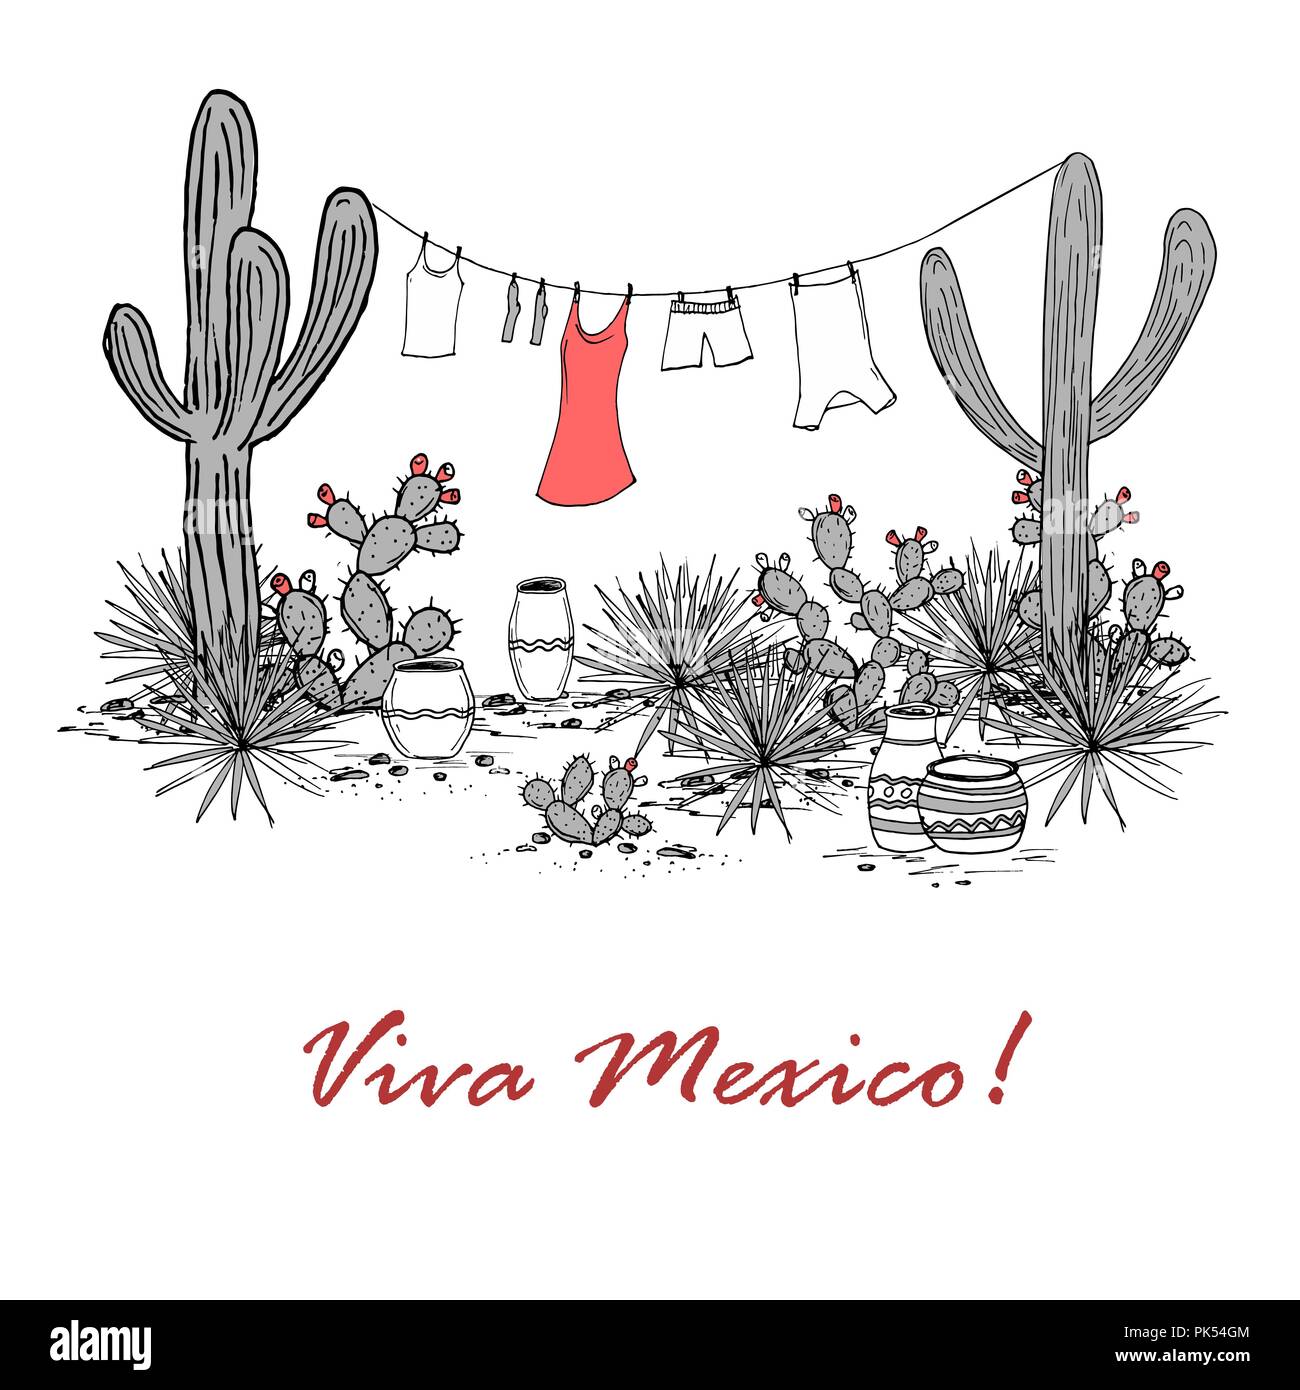 Funny disegnati a mano illustraytion con vasi, saguaro, agave blu, fichidindia e servizio lavanderia appeso su uno stendibiancheria. Latin American background. Mexican Illustrazione Vettoriale